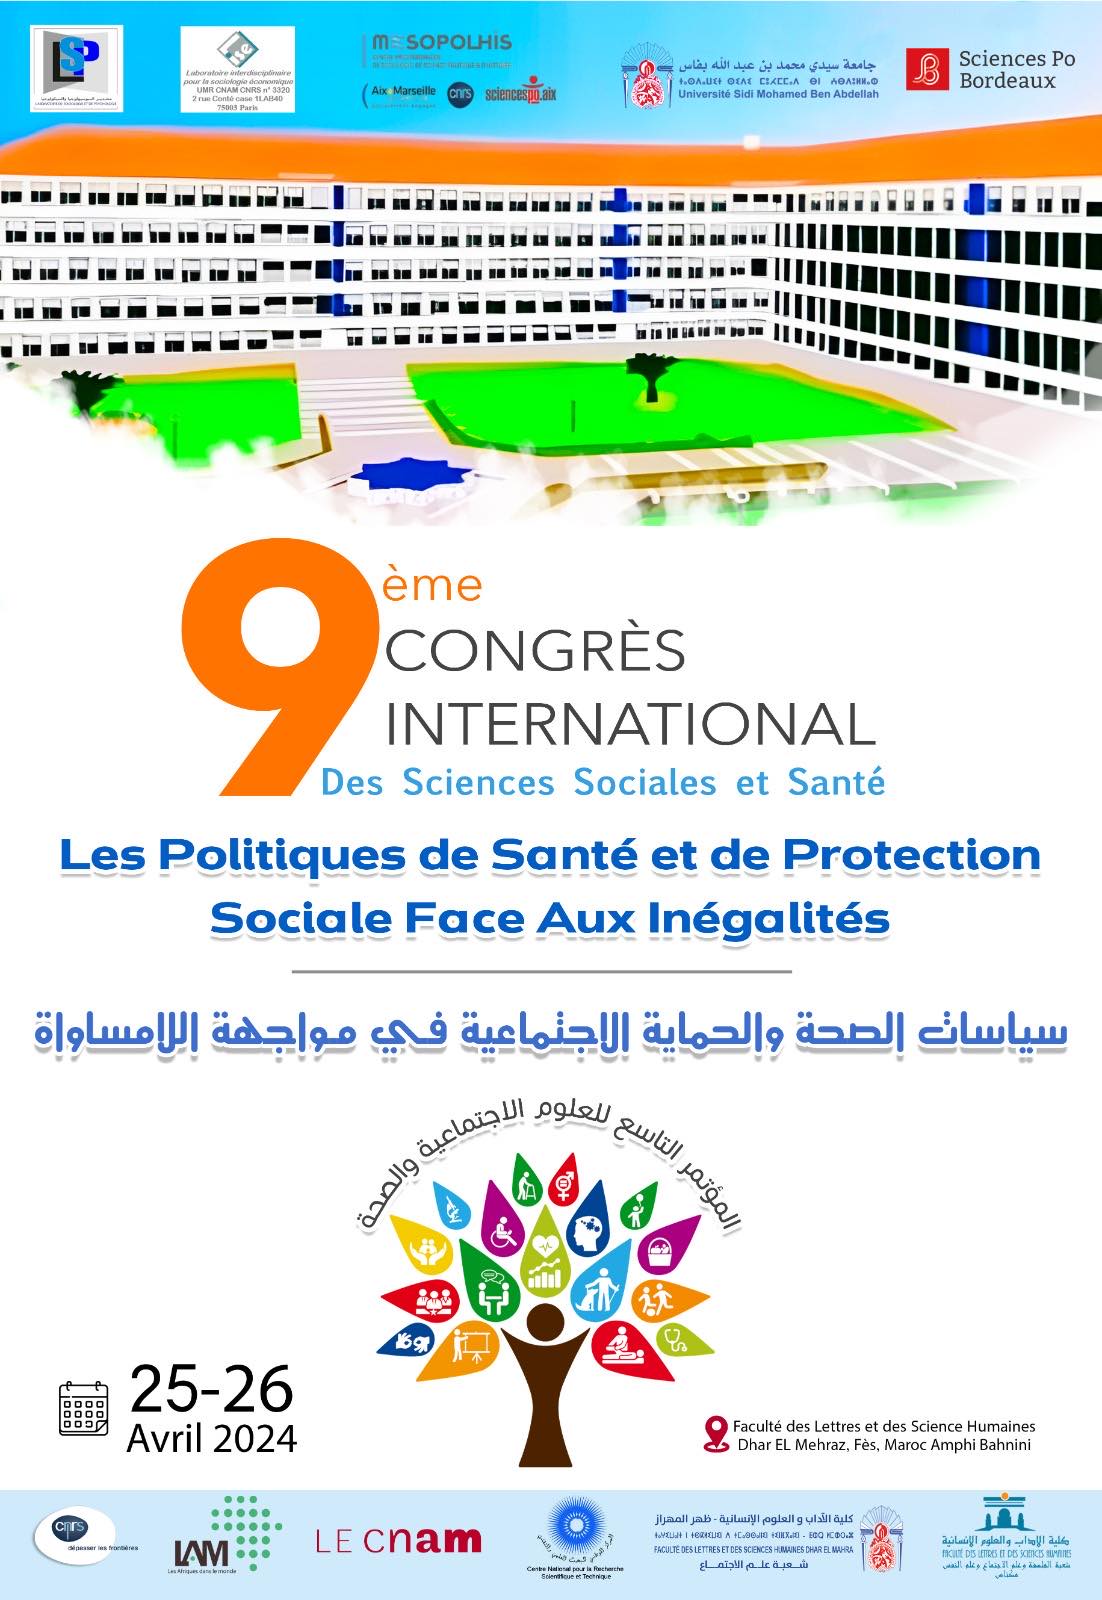 المؤتمر التاسع للعلوم الإجتماعية والصحة يناقش موضوع سياسات الصحة والحماية الإجتماعية في مواجهة التفاوت